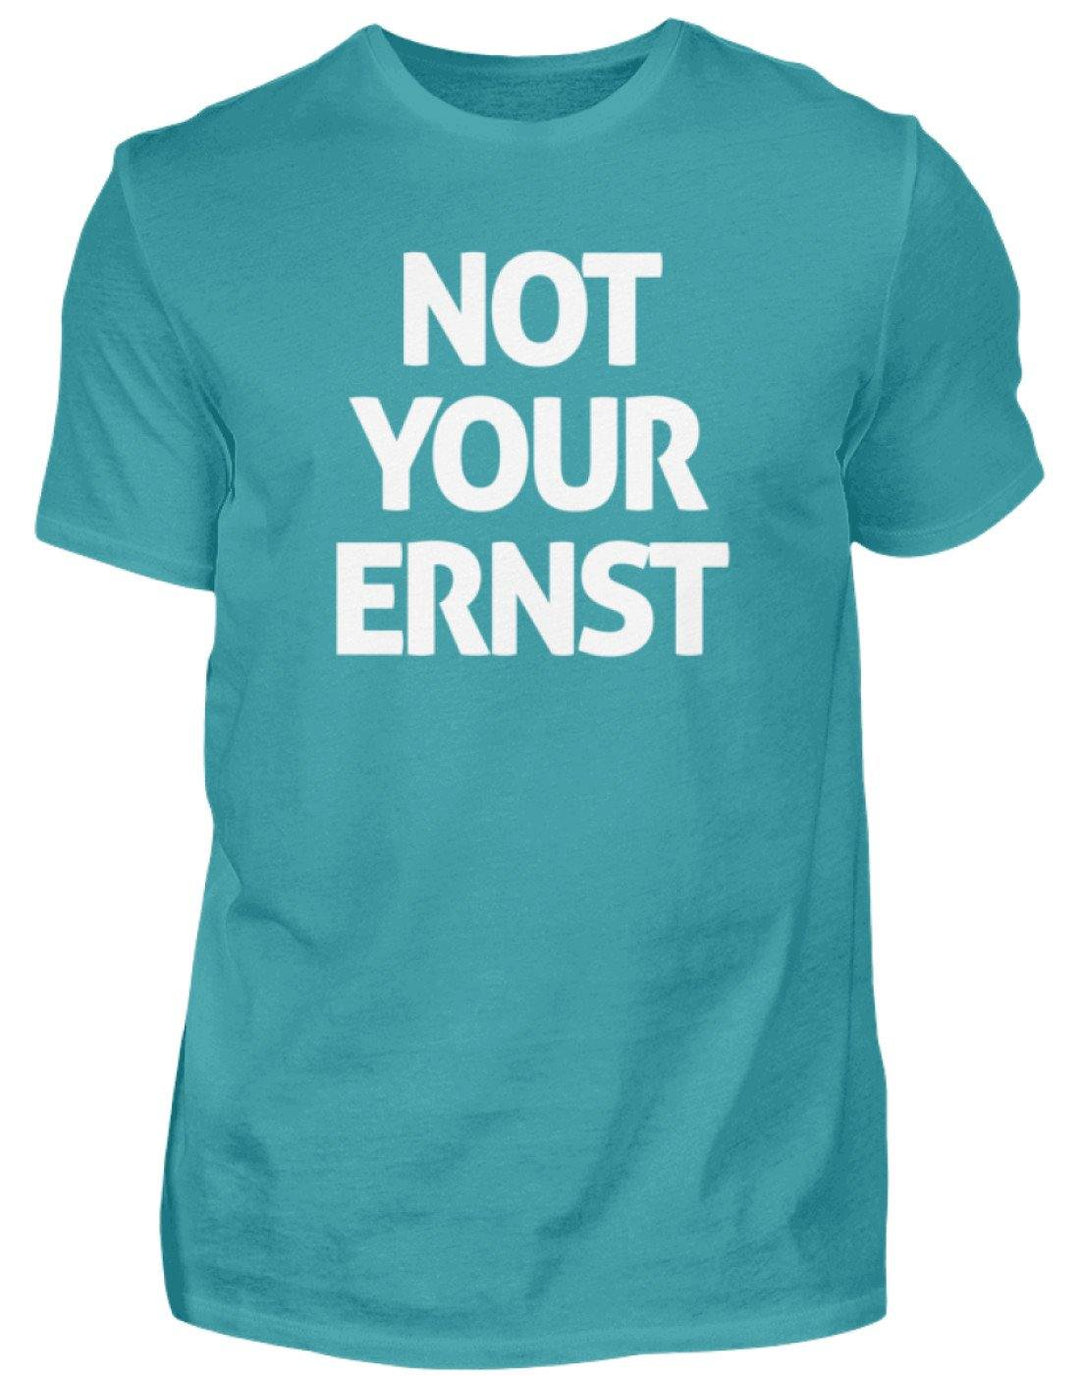 Not Your Ernst - Words on Shirt  - Herren Shirt - Words on Shirts Sag es mit dem Mittelfinger Shirts Hoodies Sweatshirt Taschen Gymsack Spruch Sprüche Statement